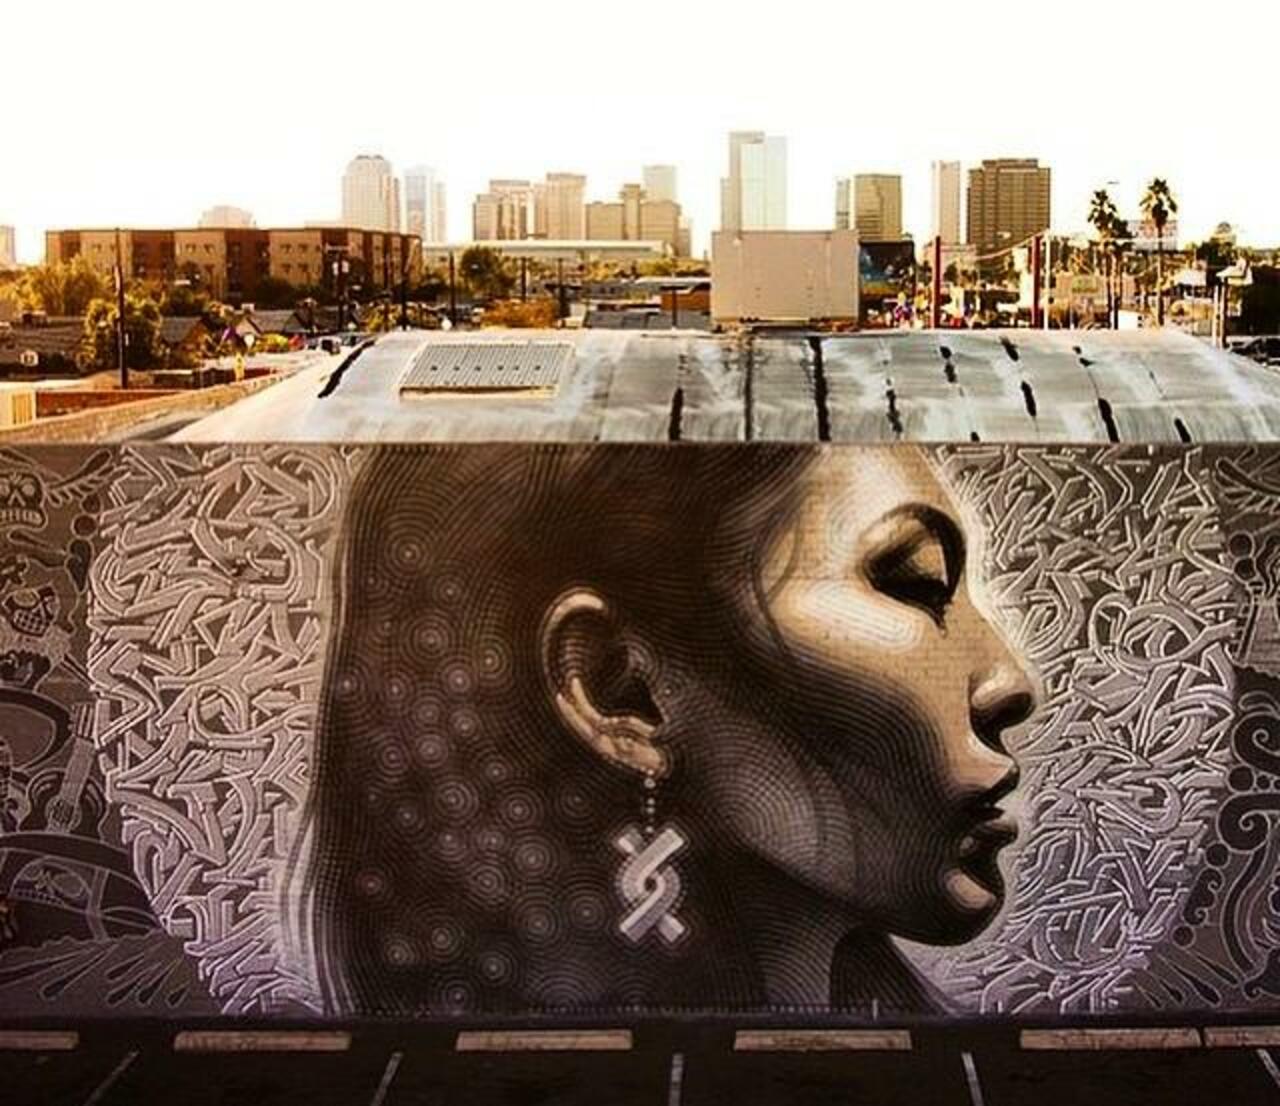 RT @BlossomTweetMe: Cool! Latest Street Art work by El Mac in Phoenix, Arizona

#art #mural #graffiti #streetart http://t.co/DJBonjxsLH